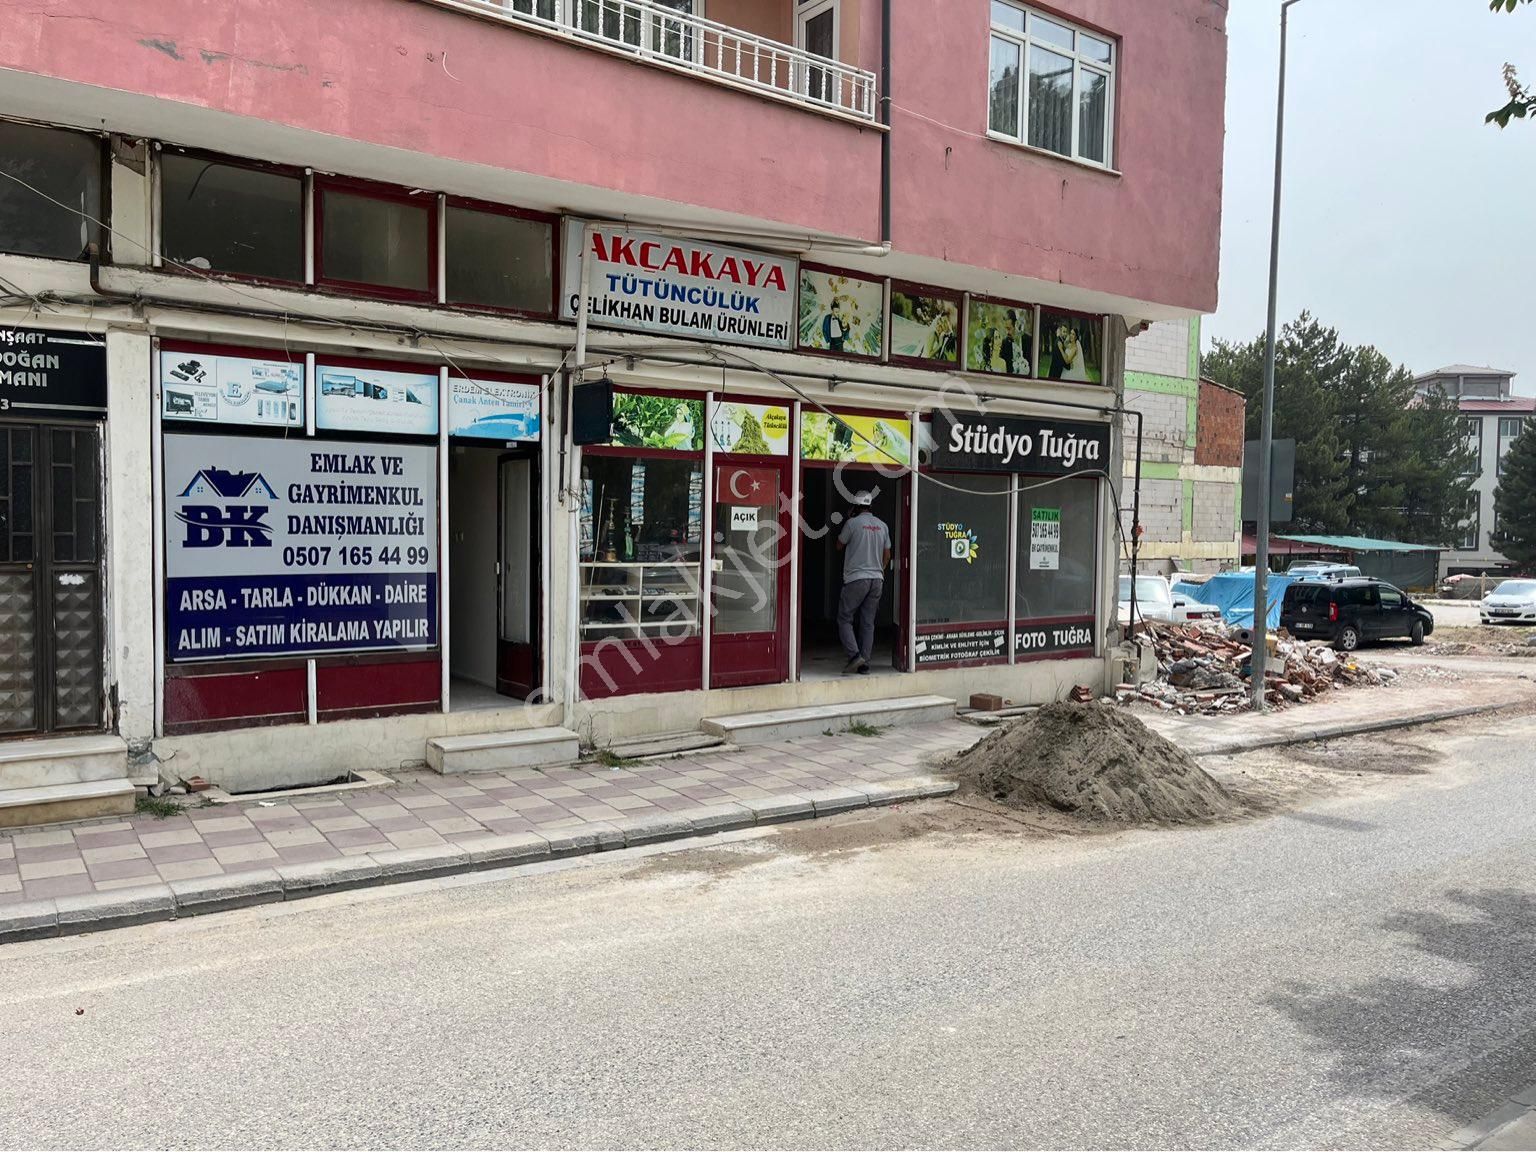 Doğanşehir Yeni Satılık Dükkan & Mağaza BK Emlak’tan Doğanşehir’de SATILIK DÜKKAN